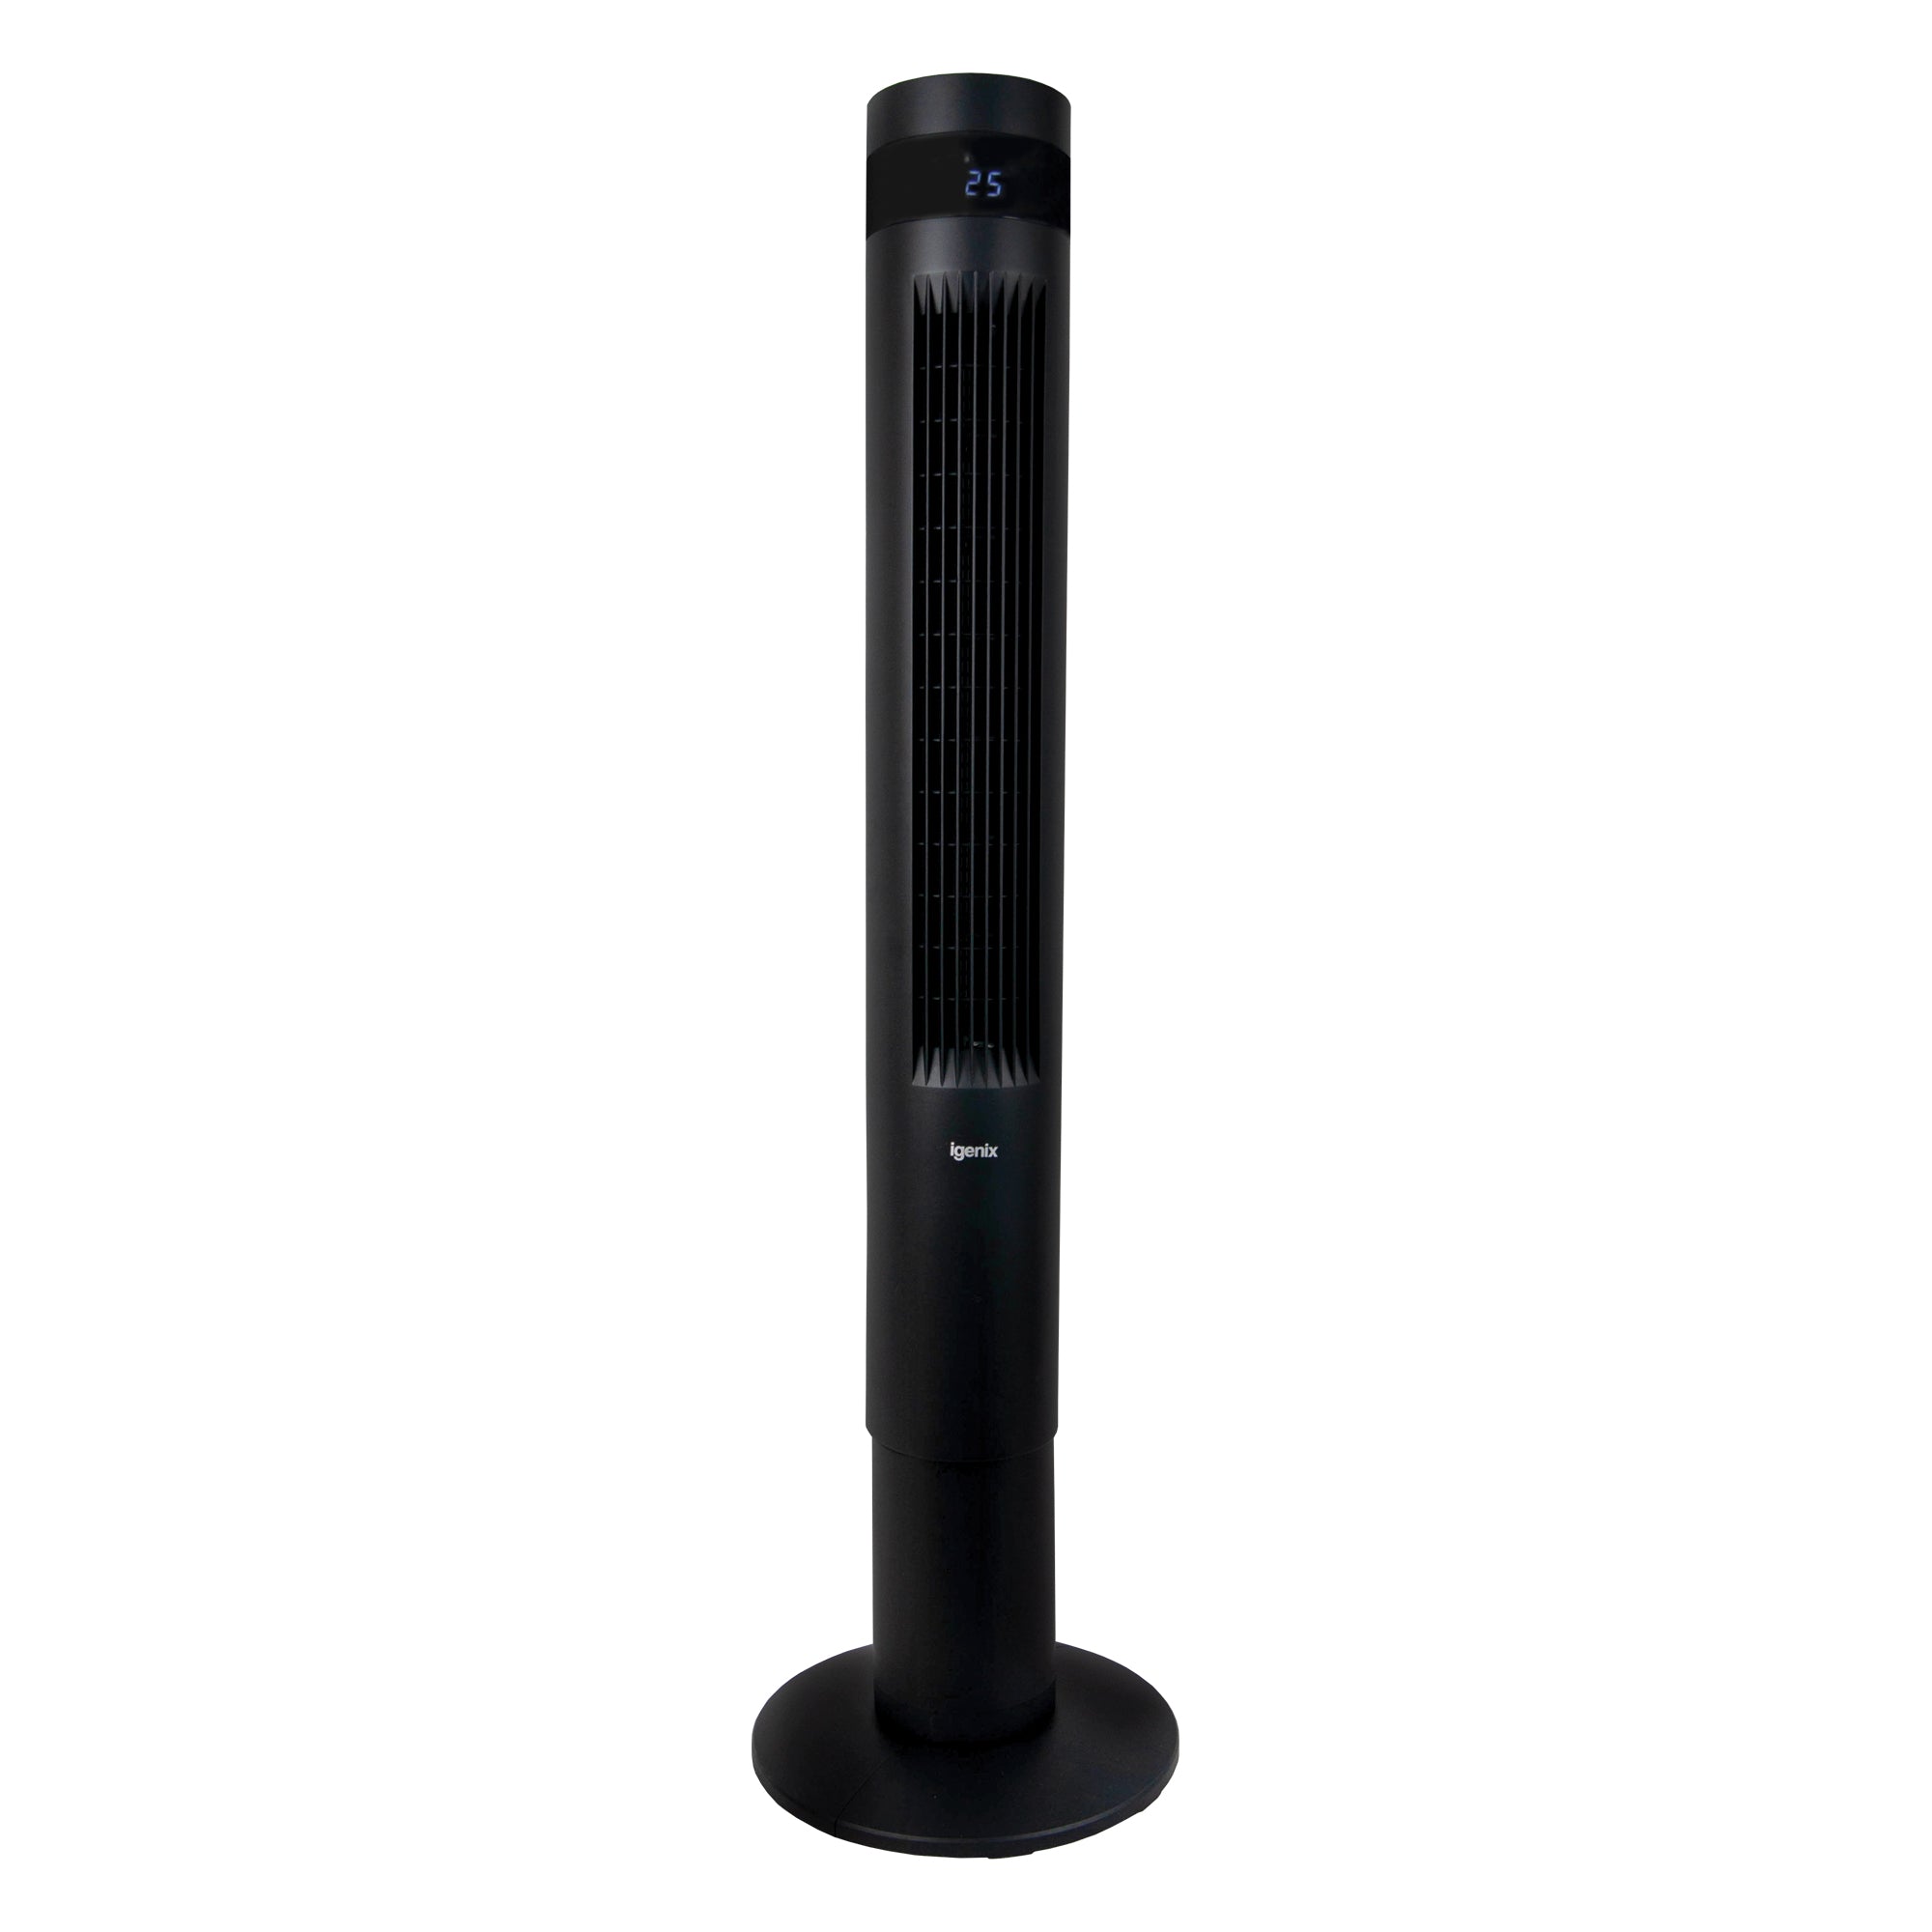 43 Inch Digital Tower Fan, 3 Speed Settings, Black